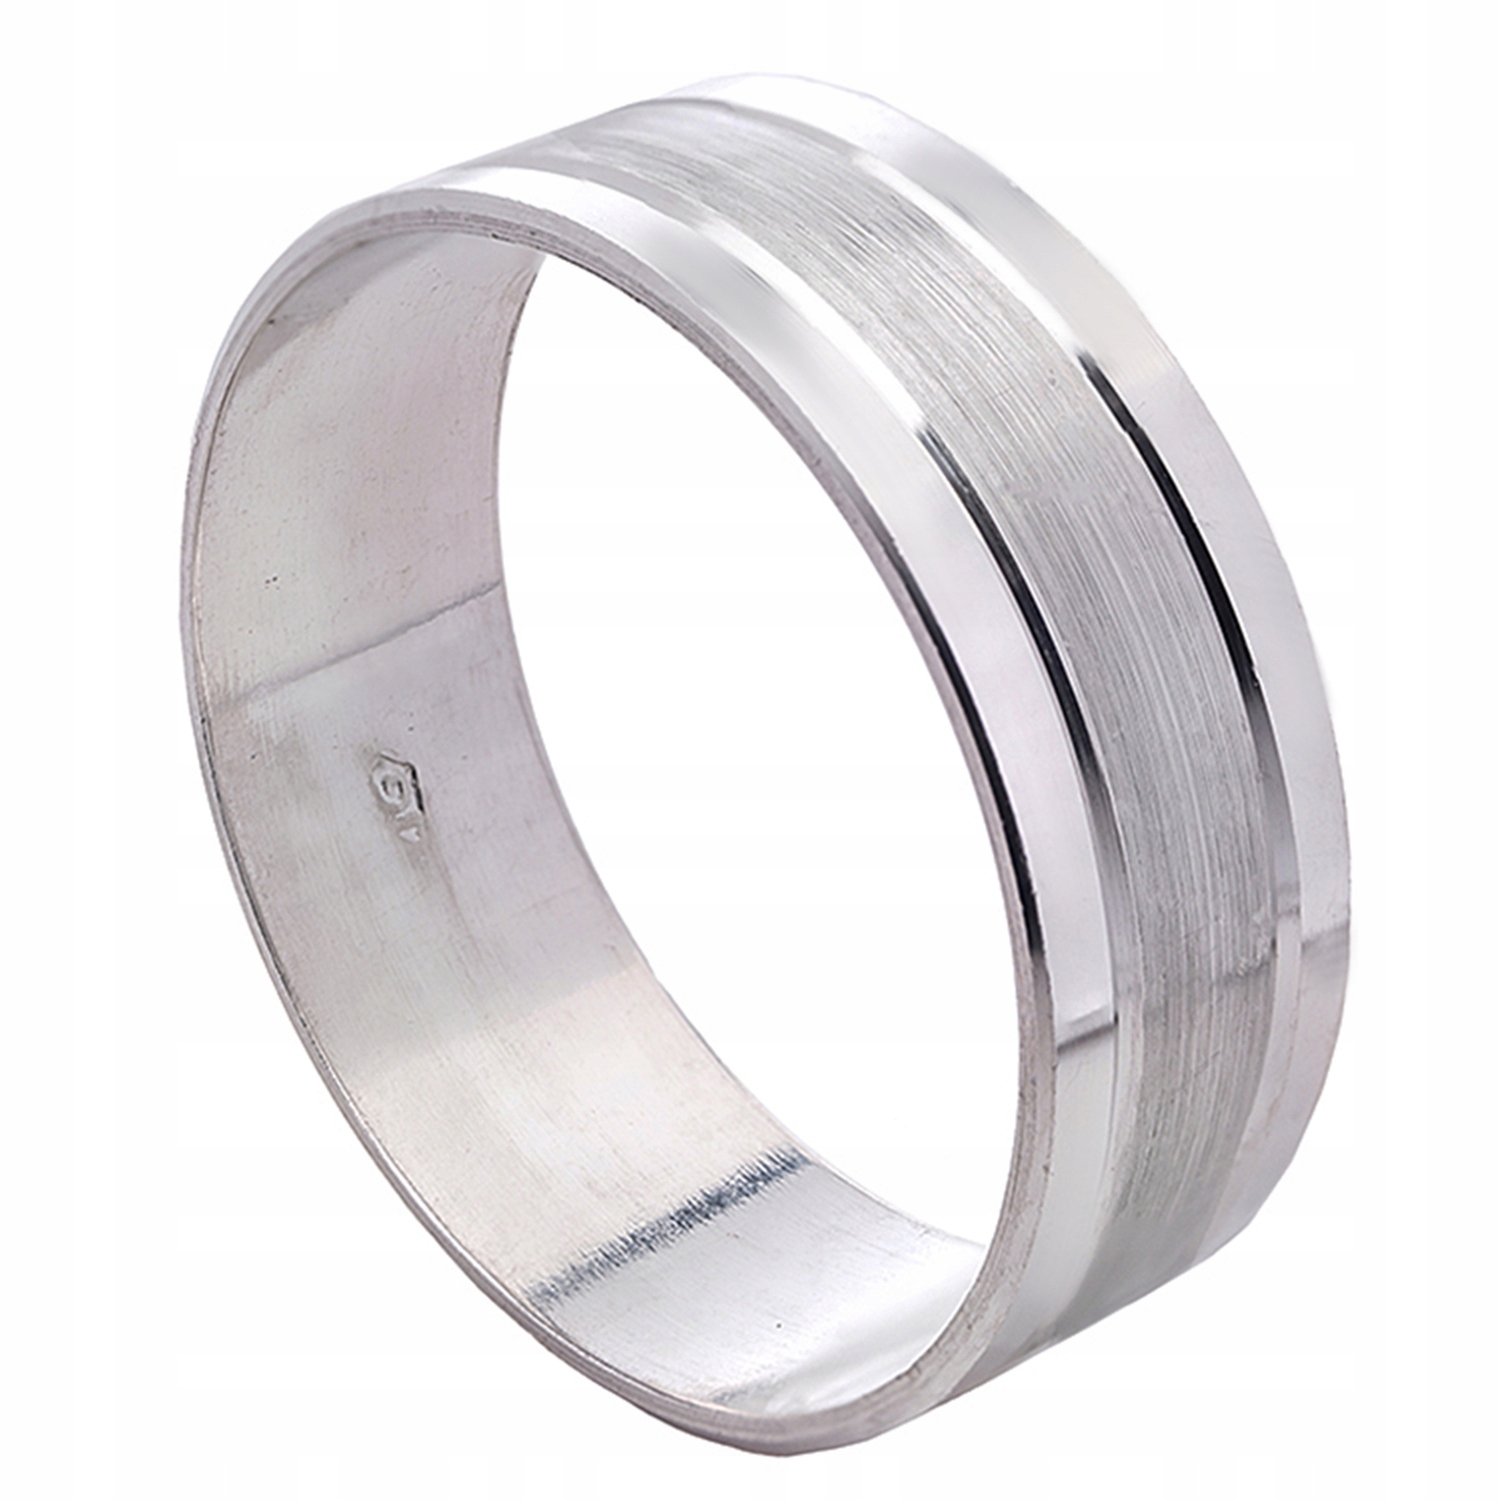 Обручальное кольцо серебро мужское. Серебряное обручальное кольцо мужское. Мужские обручальные кольца из серебра. Обручальное кольцо из серебра для мужчин. Обручальное кольцо мужское серебро.